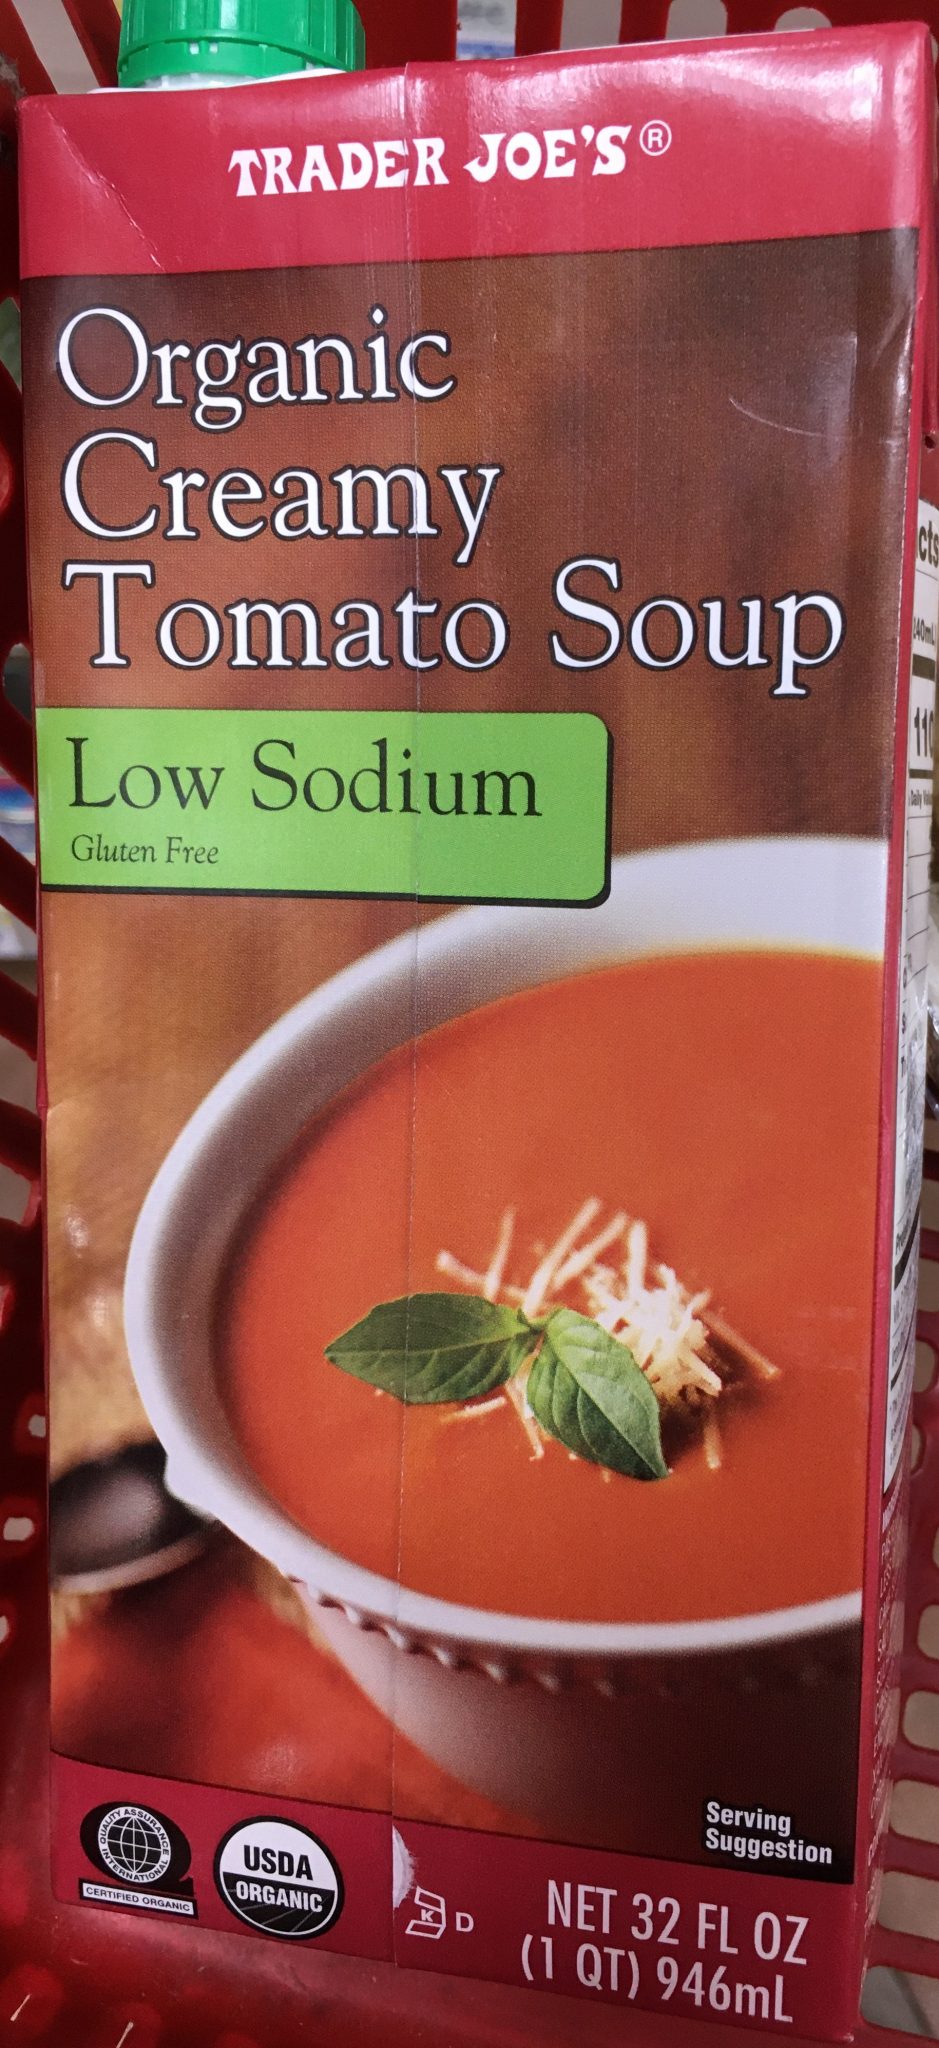 Trader Joe's Tomato Soup, Organic - Trader Joe's Reviews